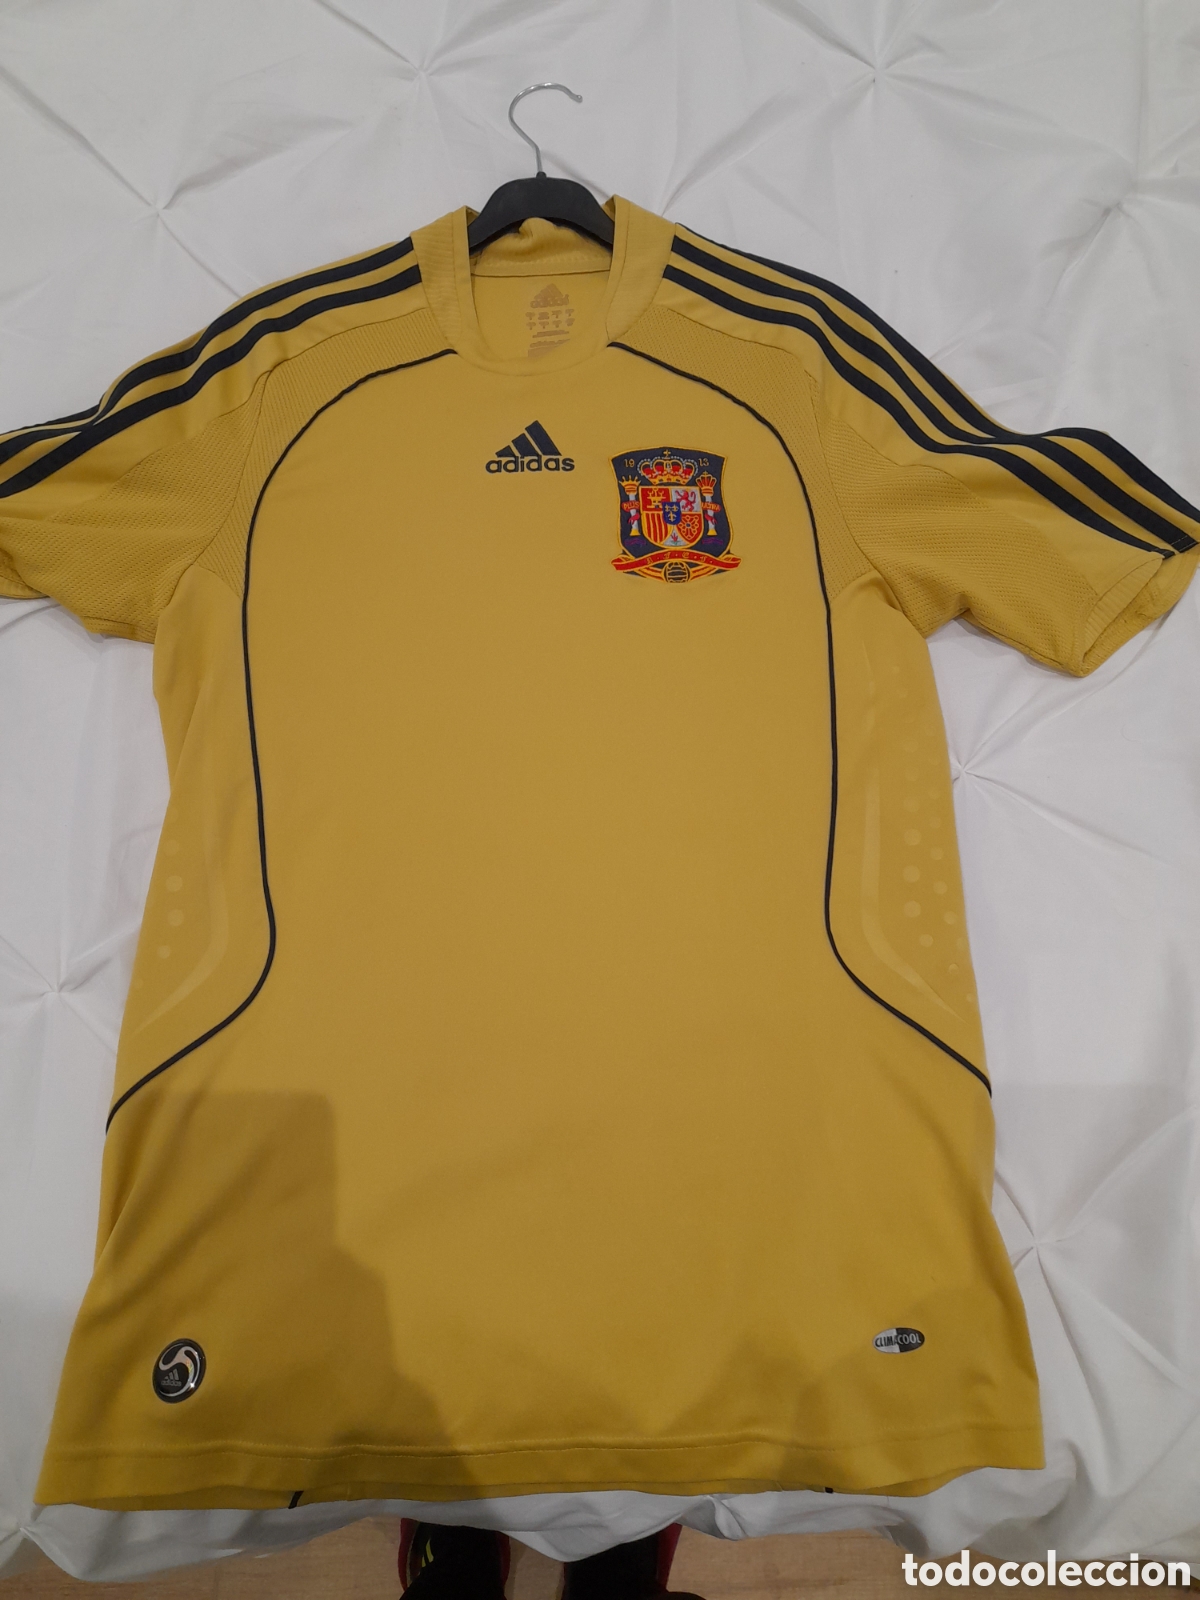 camiseta selección española eurocopa 2008, - Buy on todocoleccion